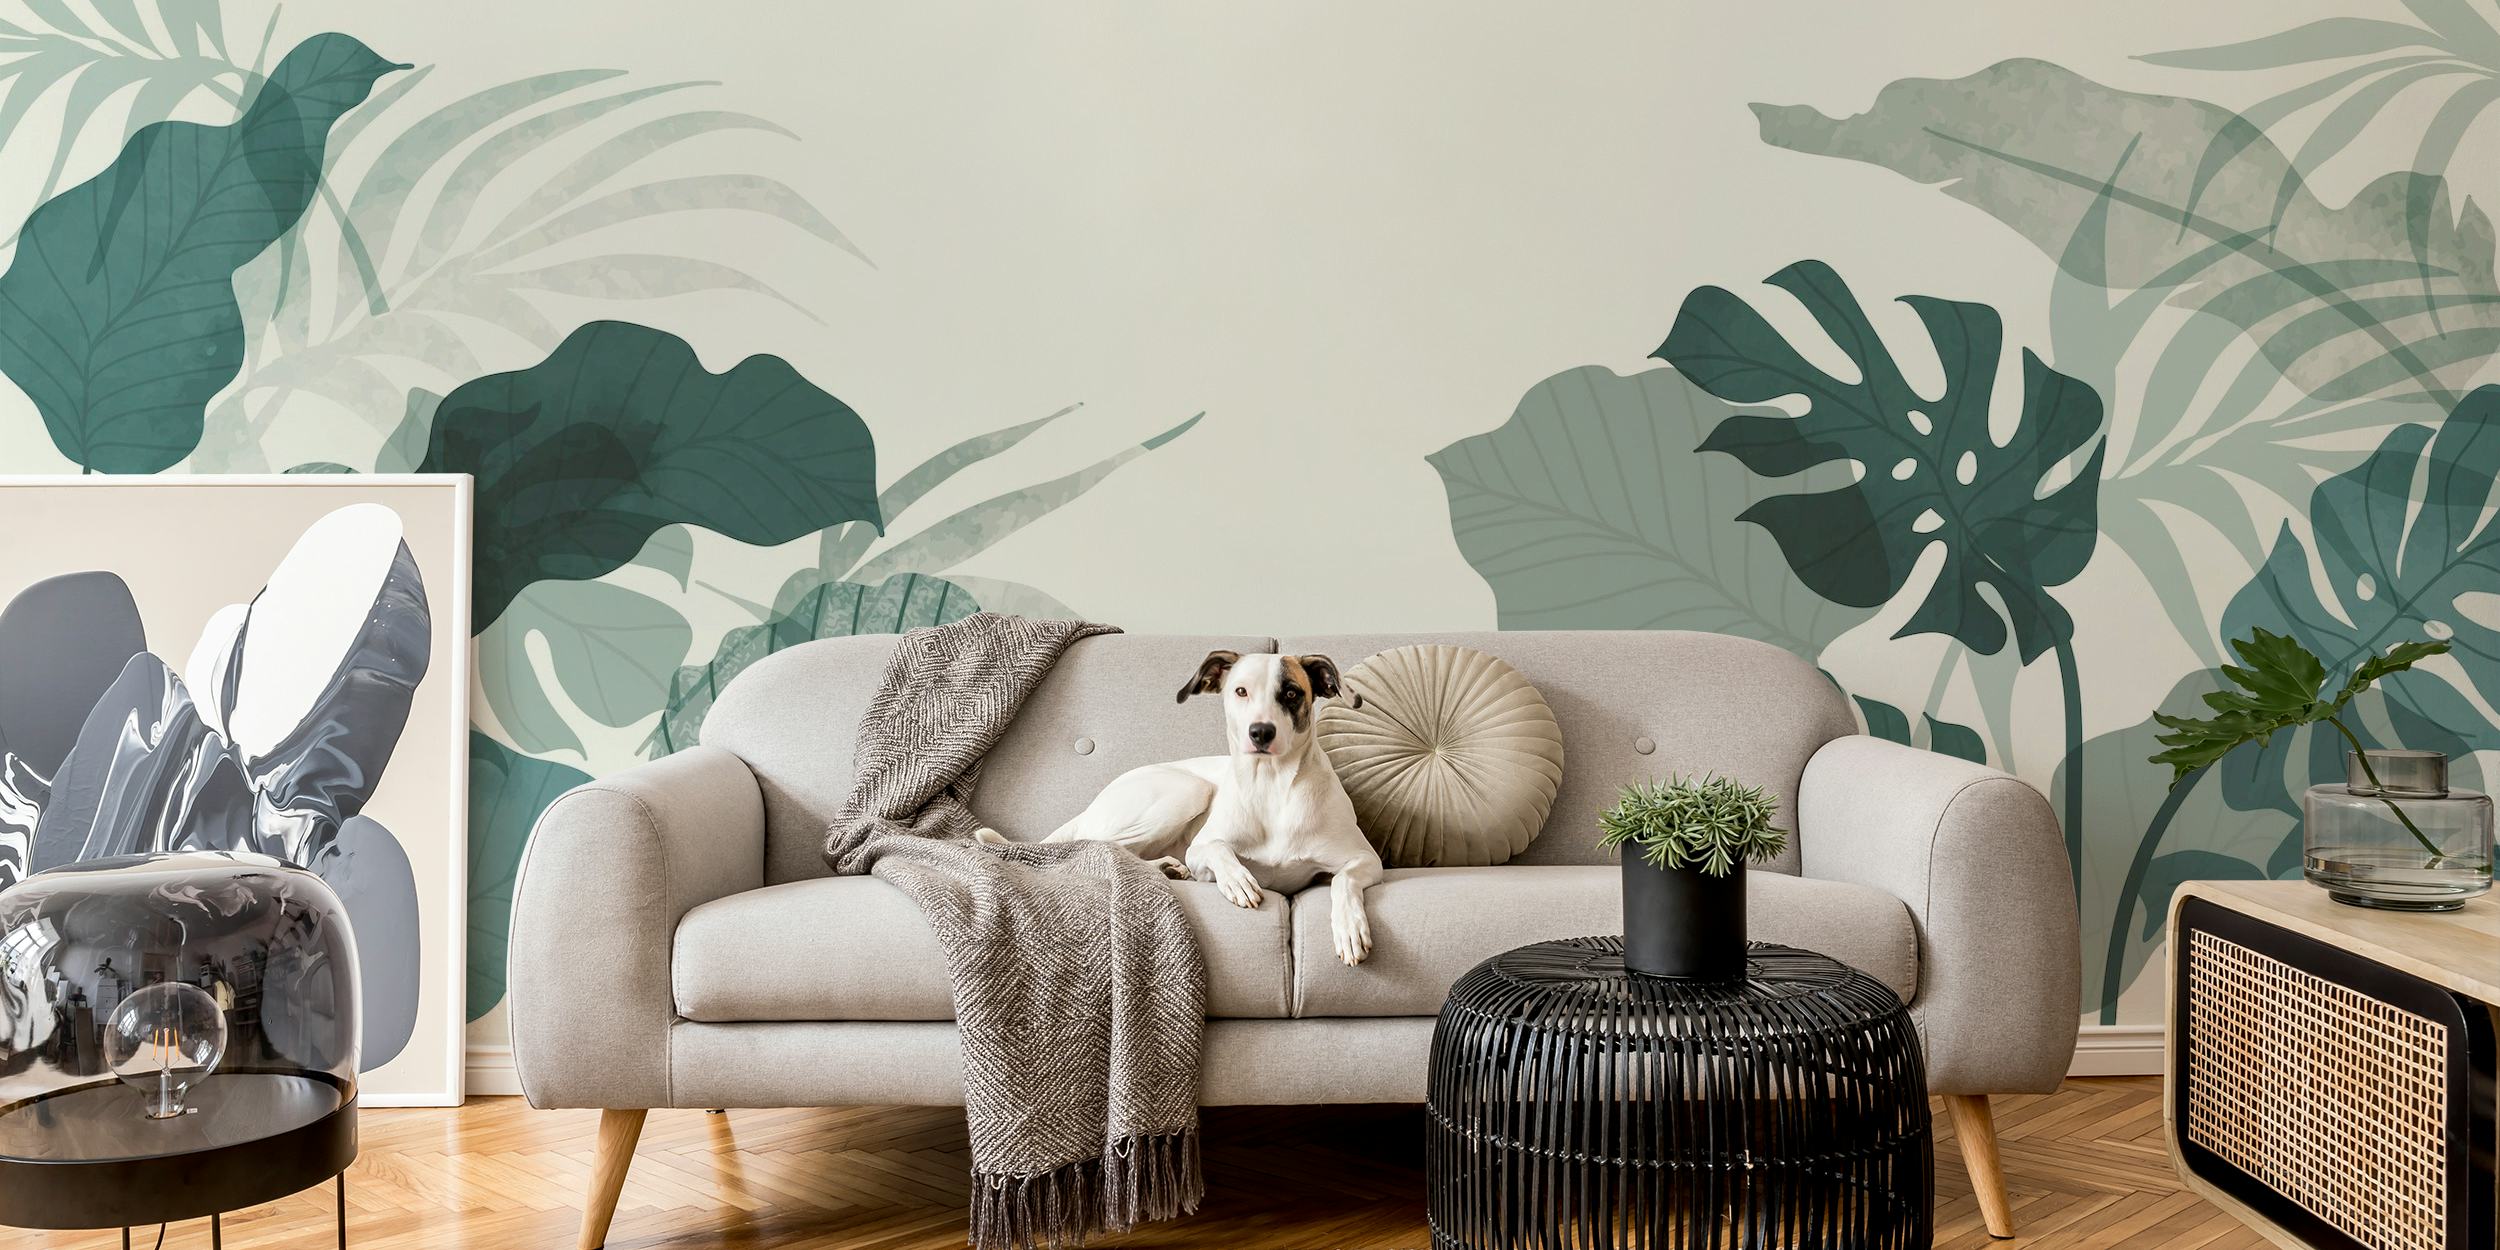 Fotomural vinílico de parede botânico elegante com tons verdes suaves e padrões de folhas